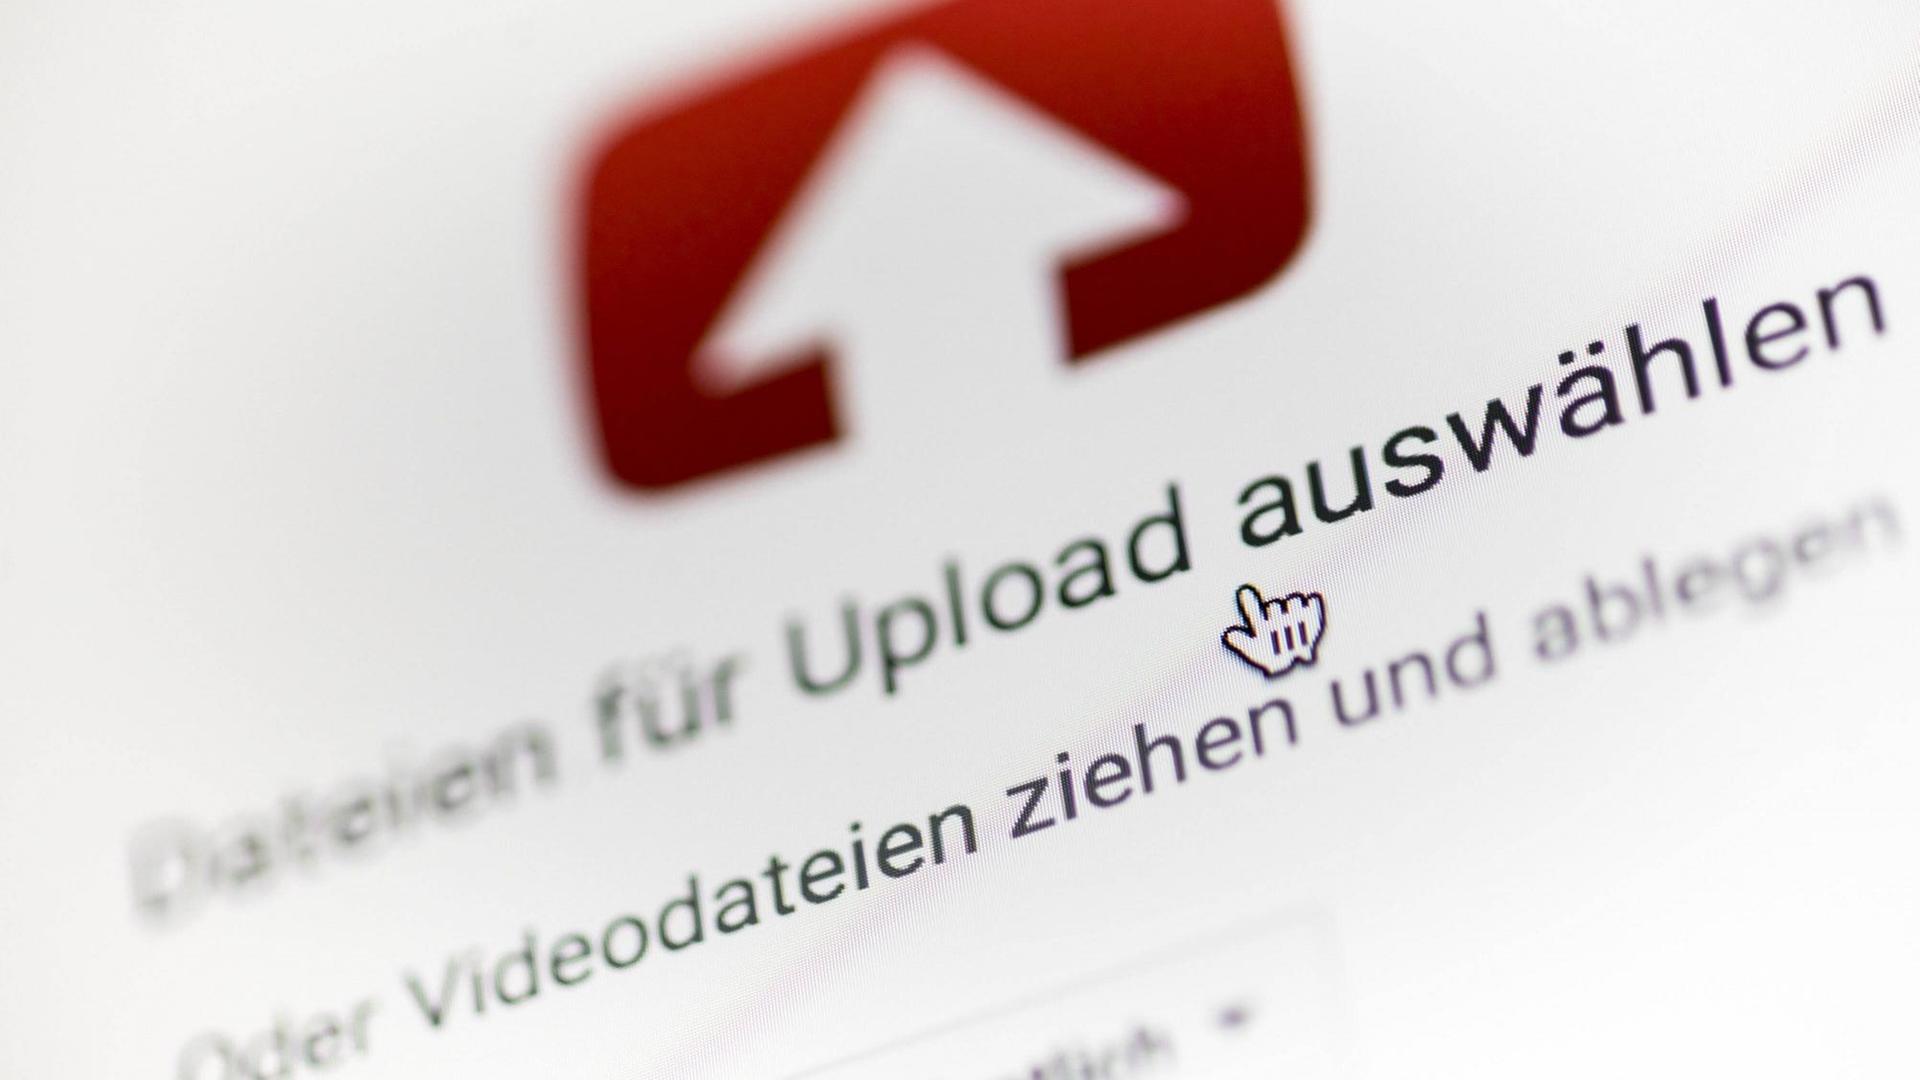 Symbolfoto zum Thema Uploadfilter. Ein Pfeil zeigt nach oben, darunter steht, Dateien für Upload auswählen oder Videodateien ziehen und ablegen.